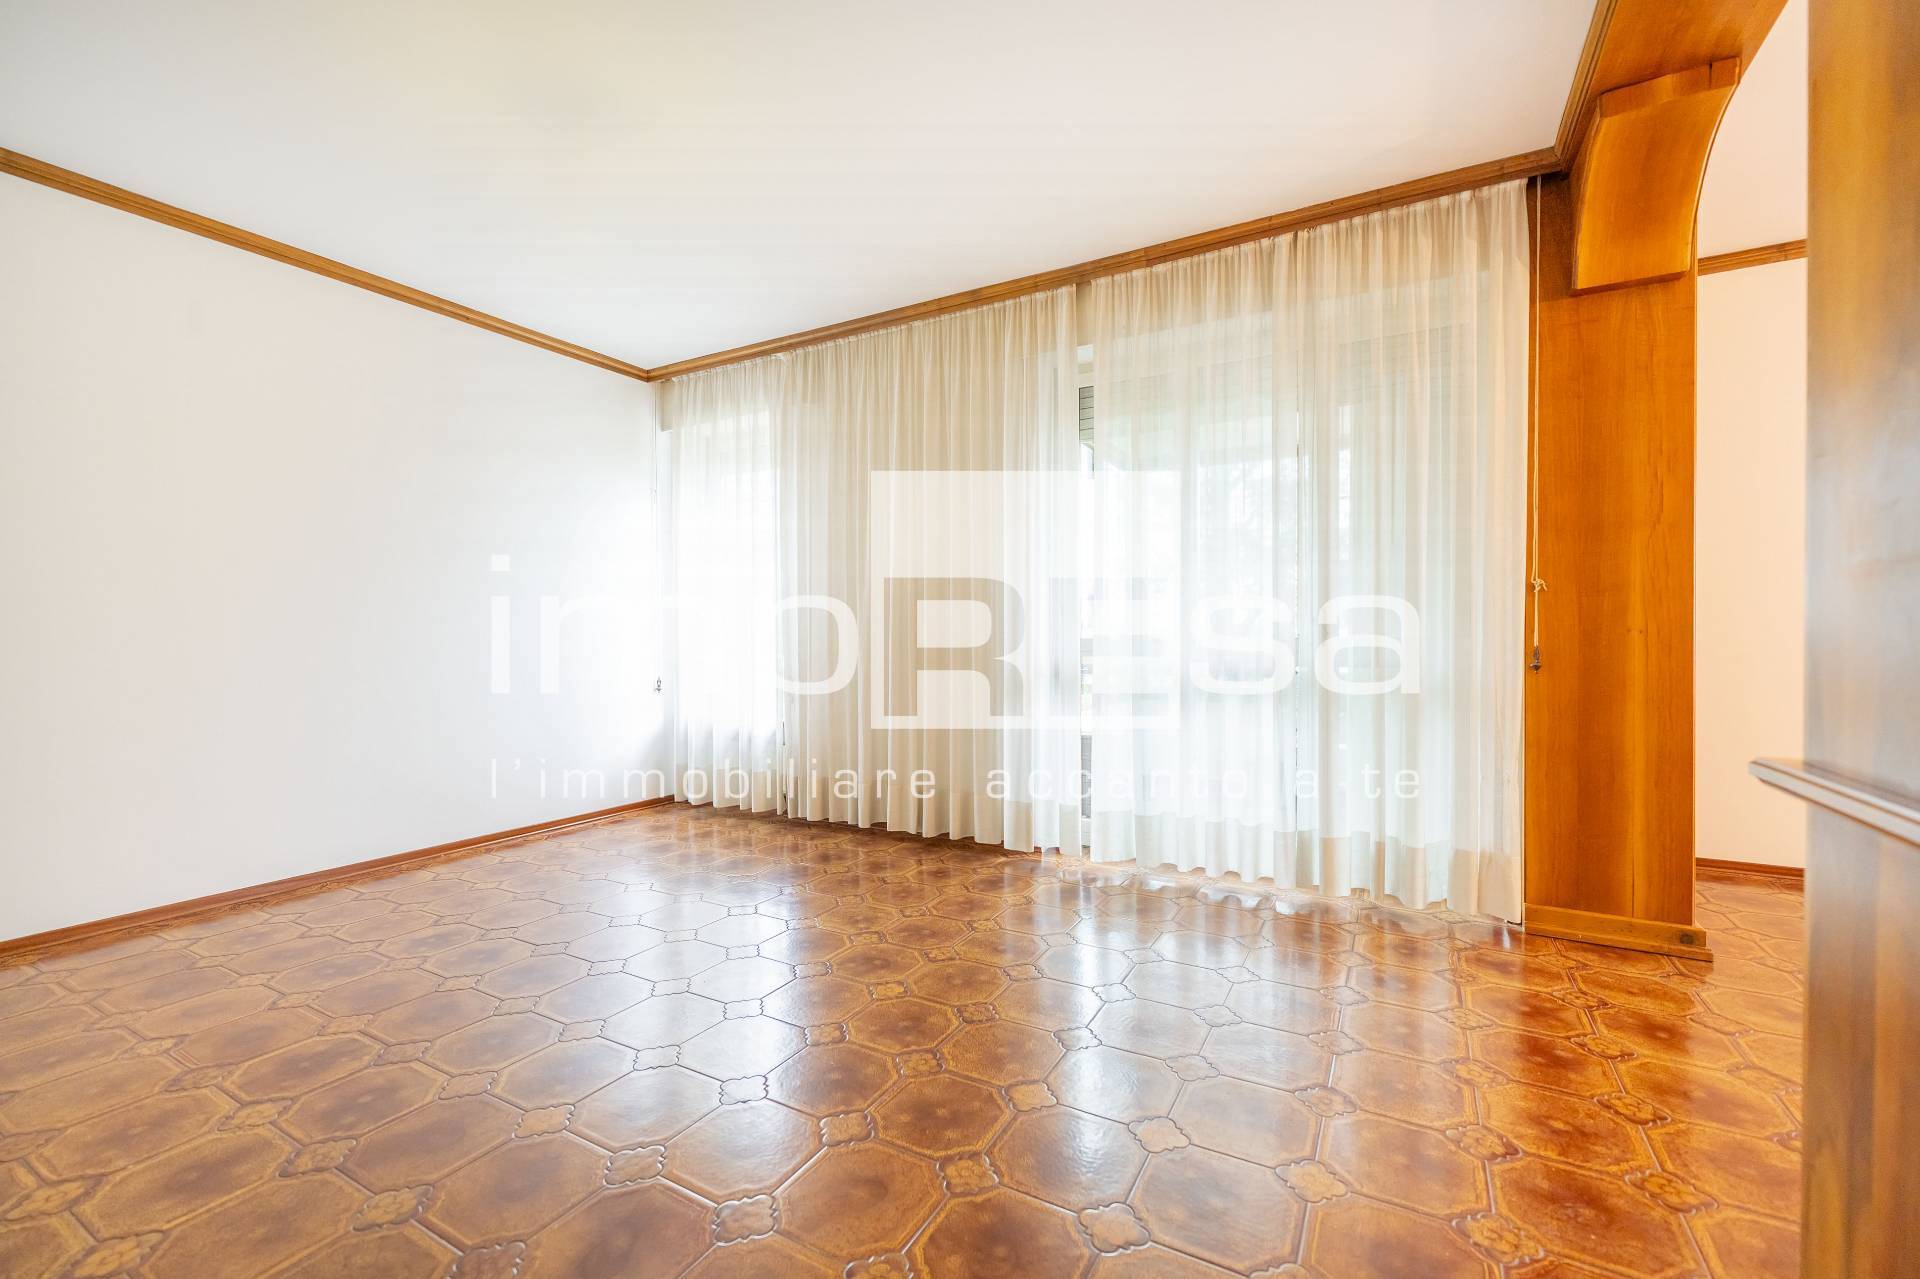 Appartamento in vendita a Pordenone, 5 locali, zona Località: Palasport, prezzo € 149.000 | PortaleAgenzieImmobiliari.it